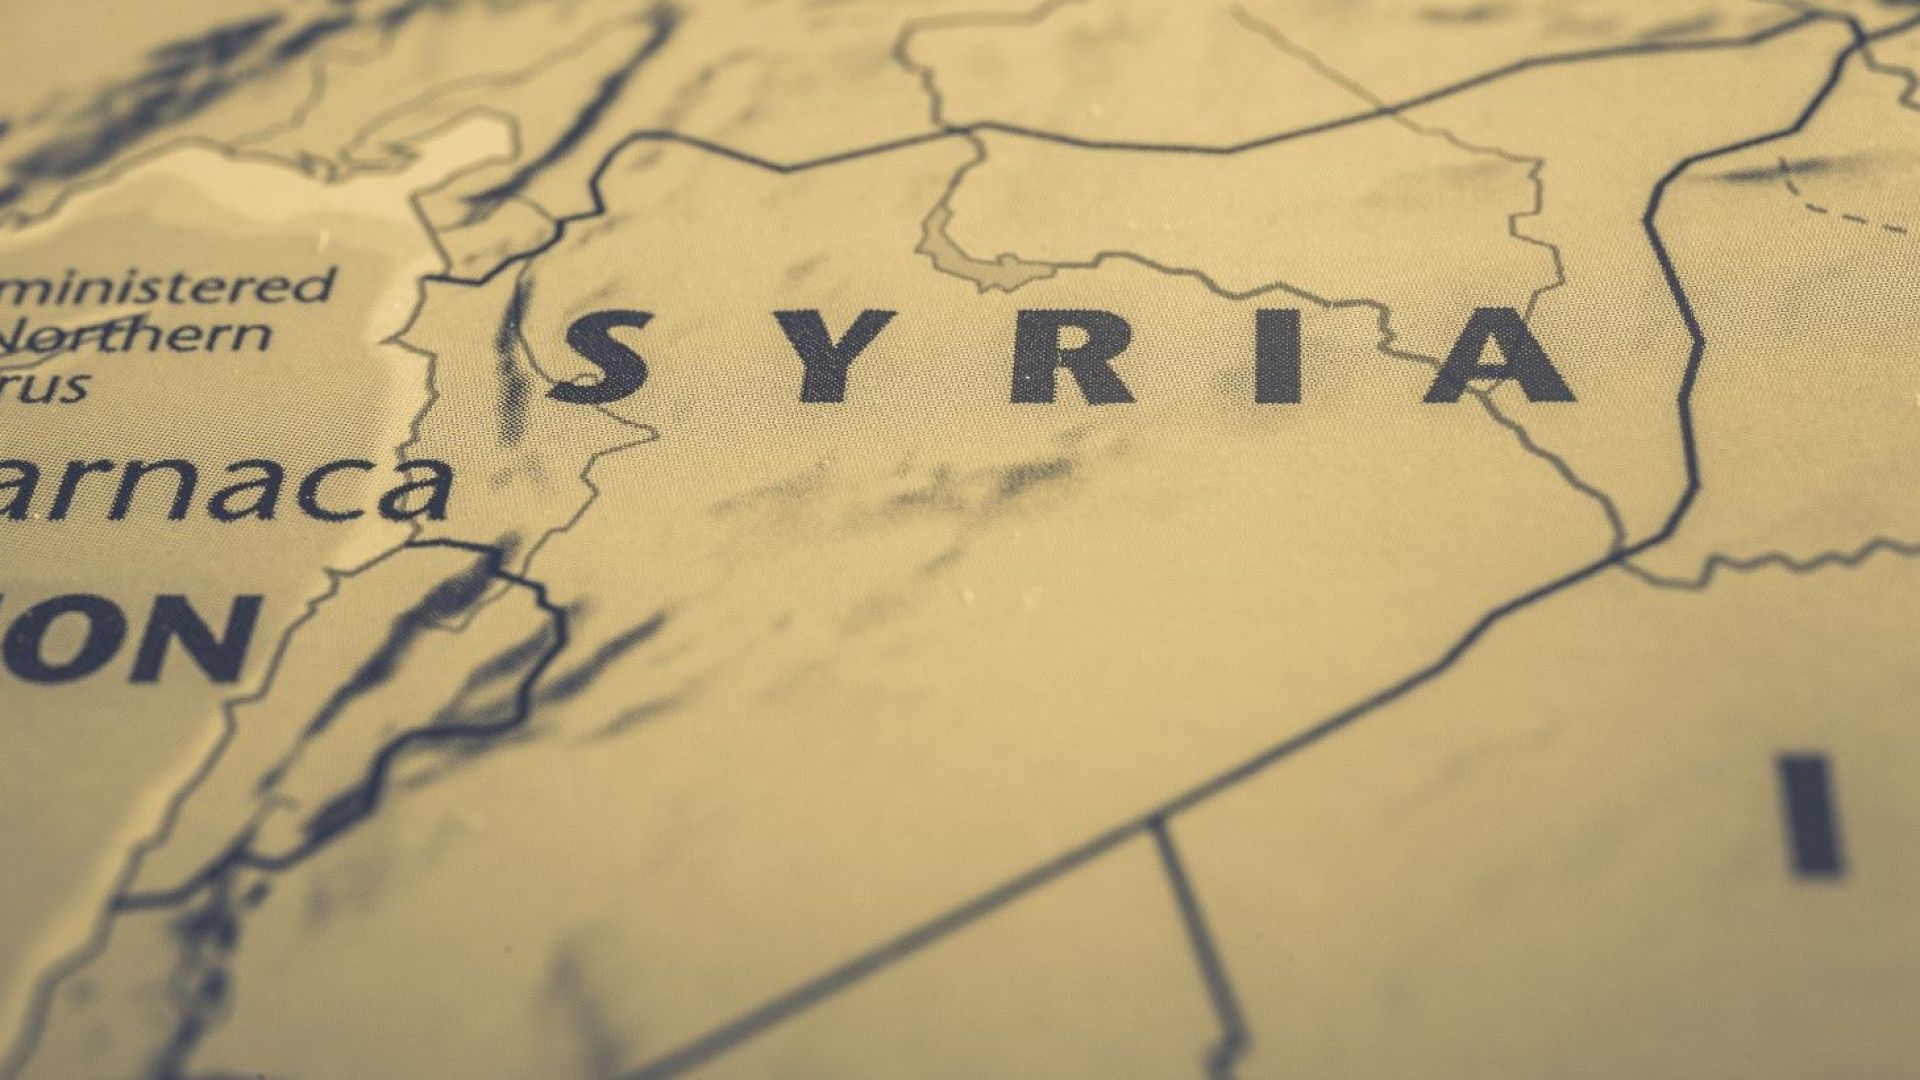 Хизбула пренасочва вниманието си от Сирия към борбата с коронавируса